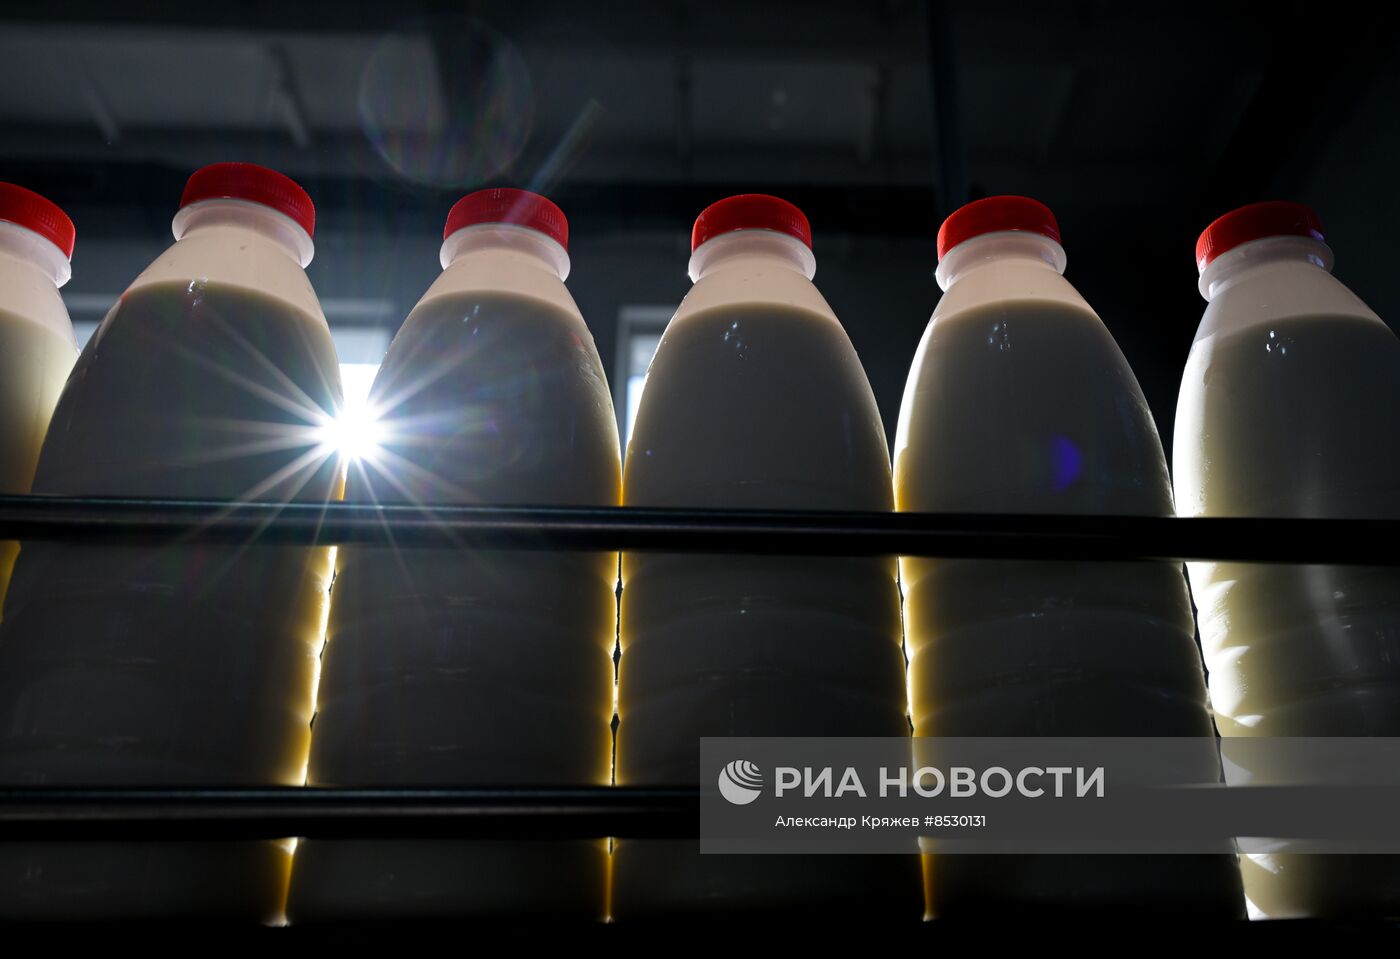 Производство молочной продукции в Новосибирской области